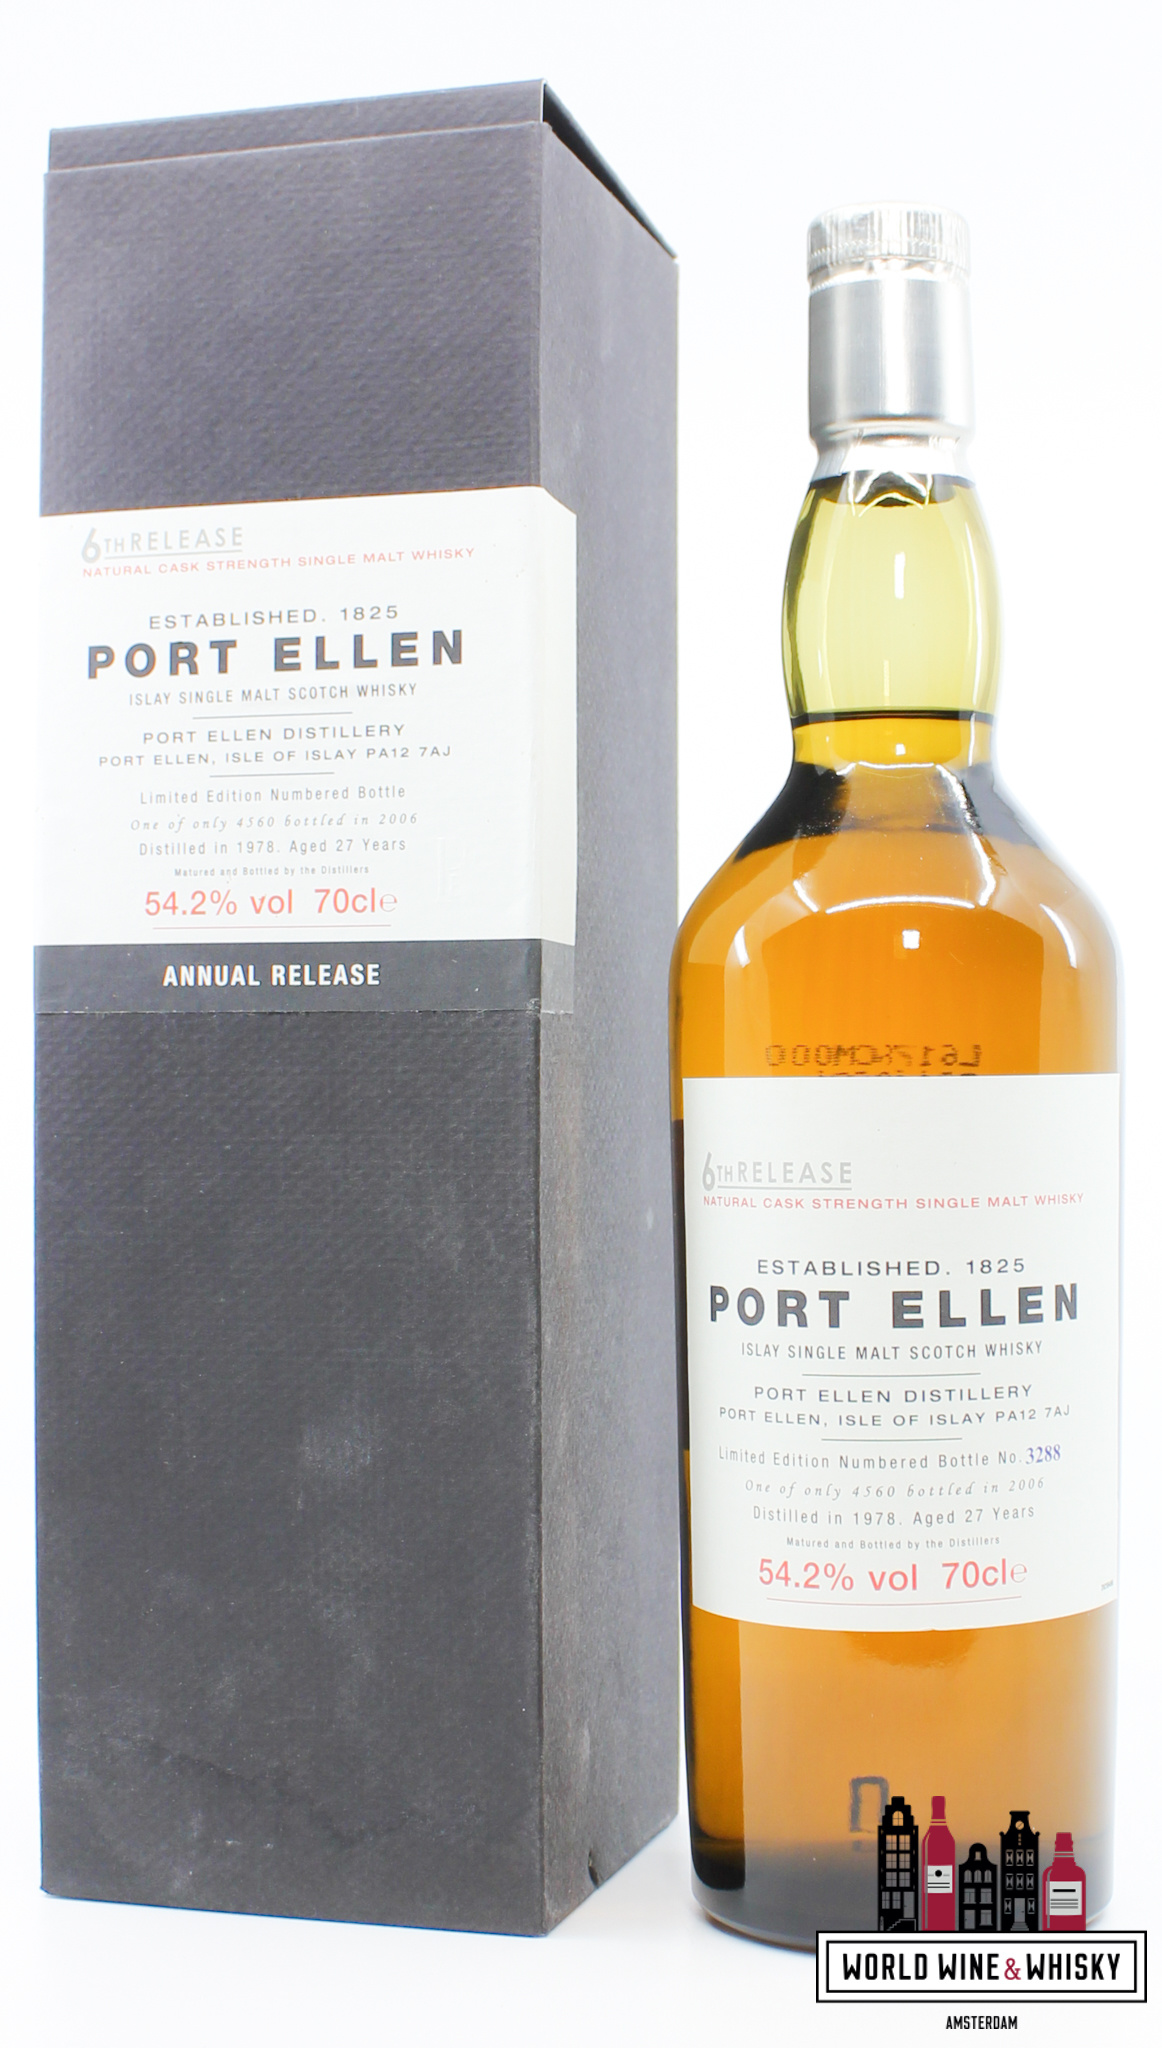 Port Ellen Port Ellen 27 Years Old 1978 2006 - 6th Release - Diageo Special Releases 2006 54.2% (1 of 4560)